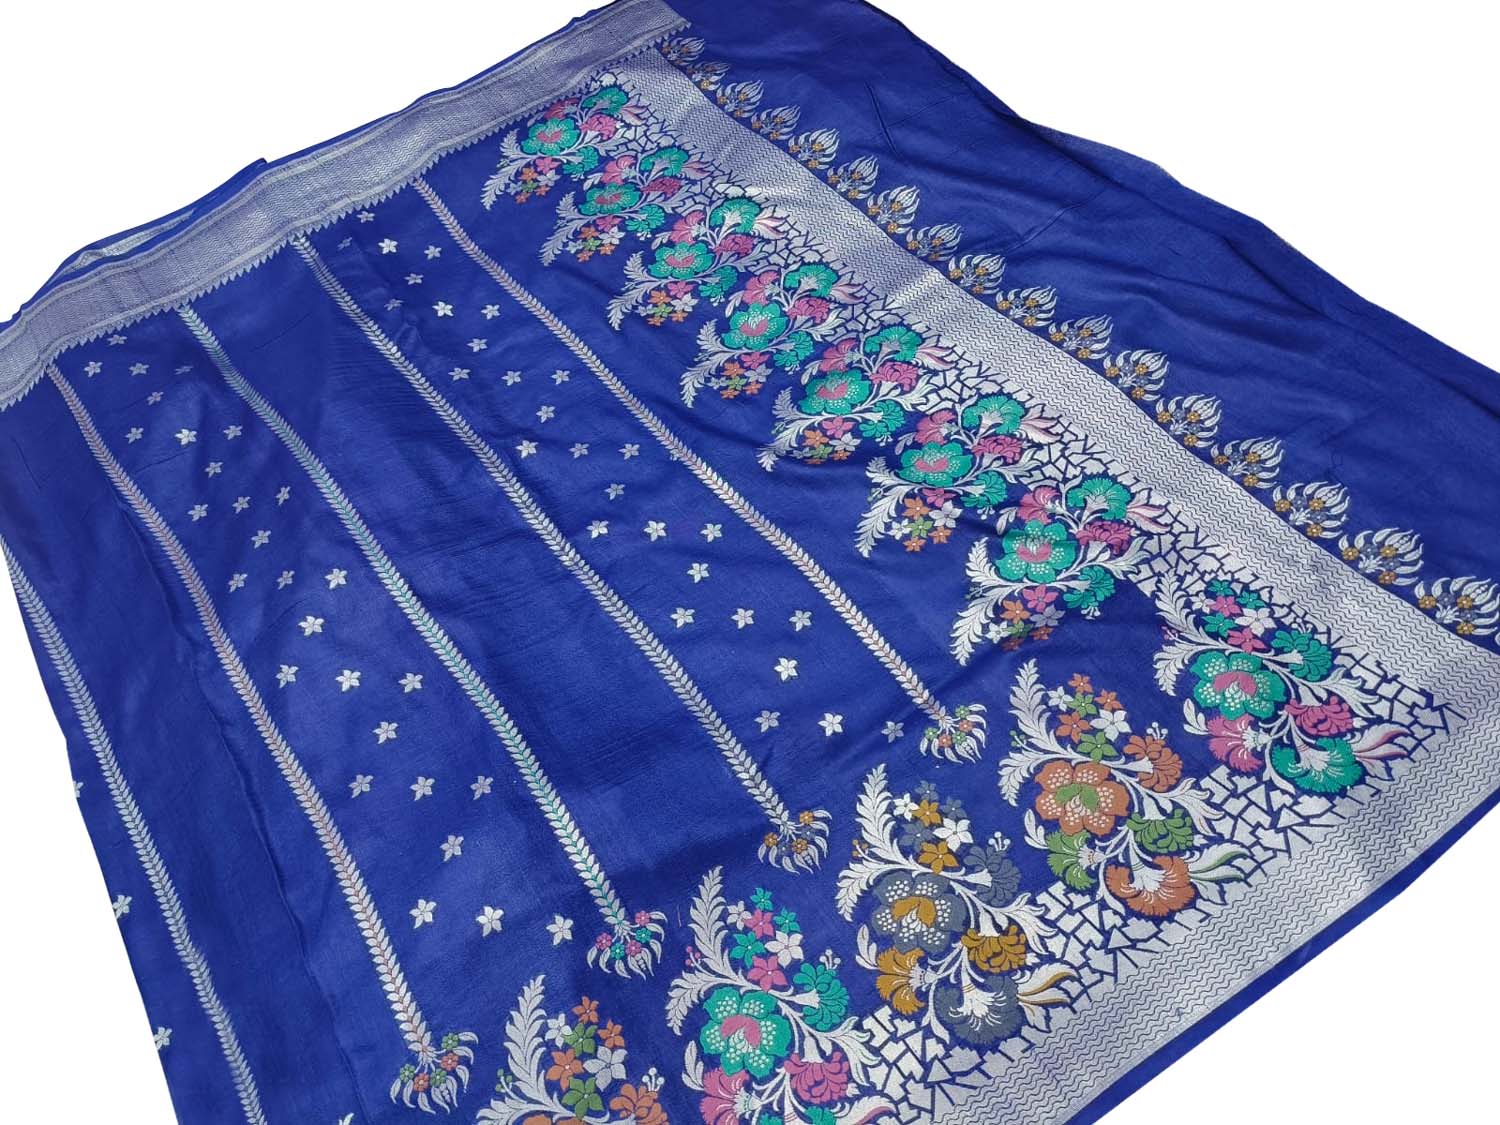 Elegant Blue Banarasi Handloom Tussar Georgette Meenakari Saree - Luxurion World